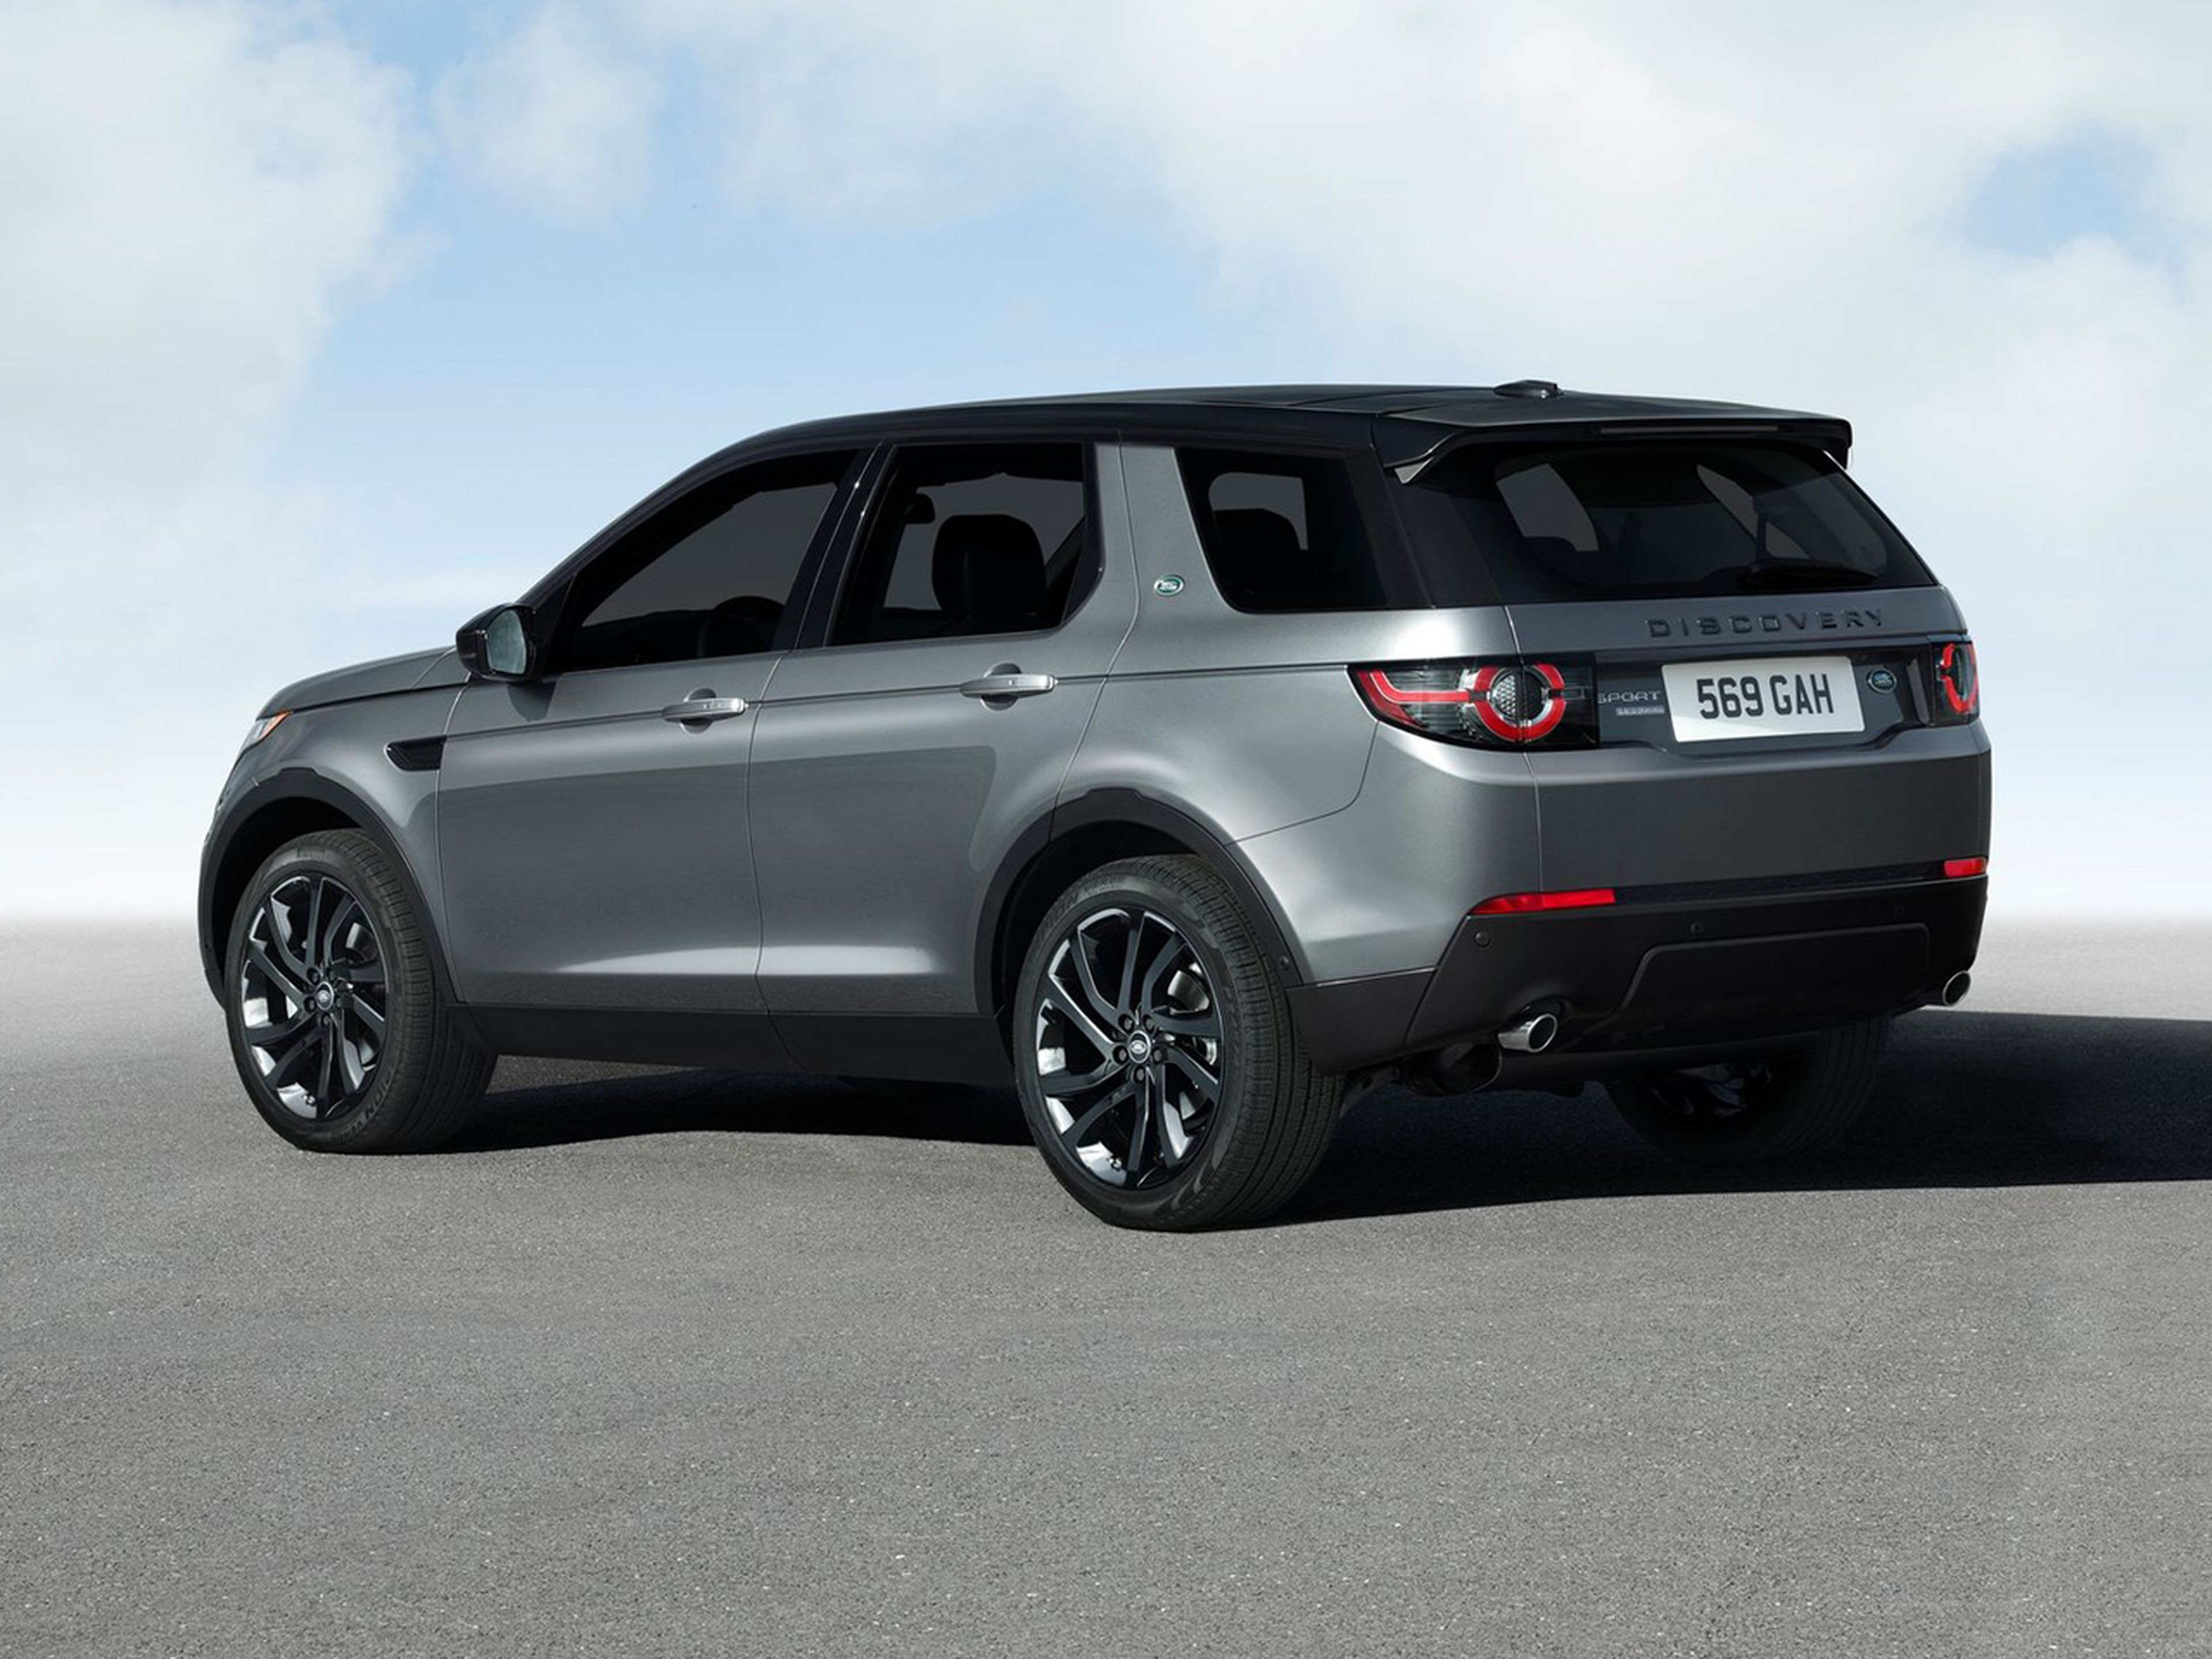 Land Rover Discovery Sport, todas las versiones y motorizaciones del  mercado, con precios, imágenes, datos técnicos y pruebas.